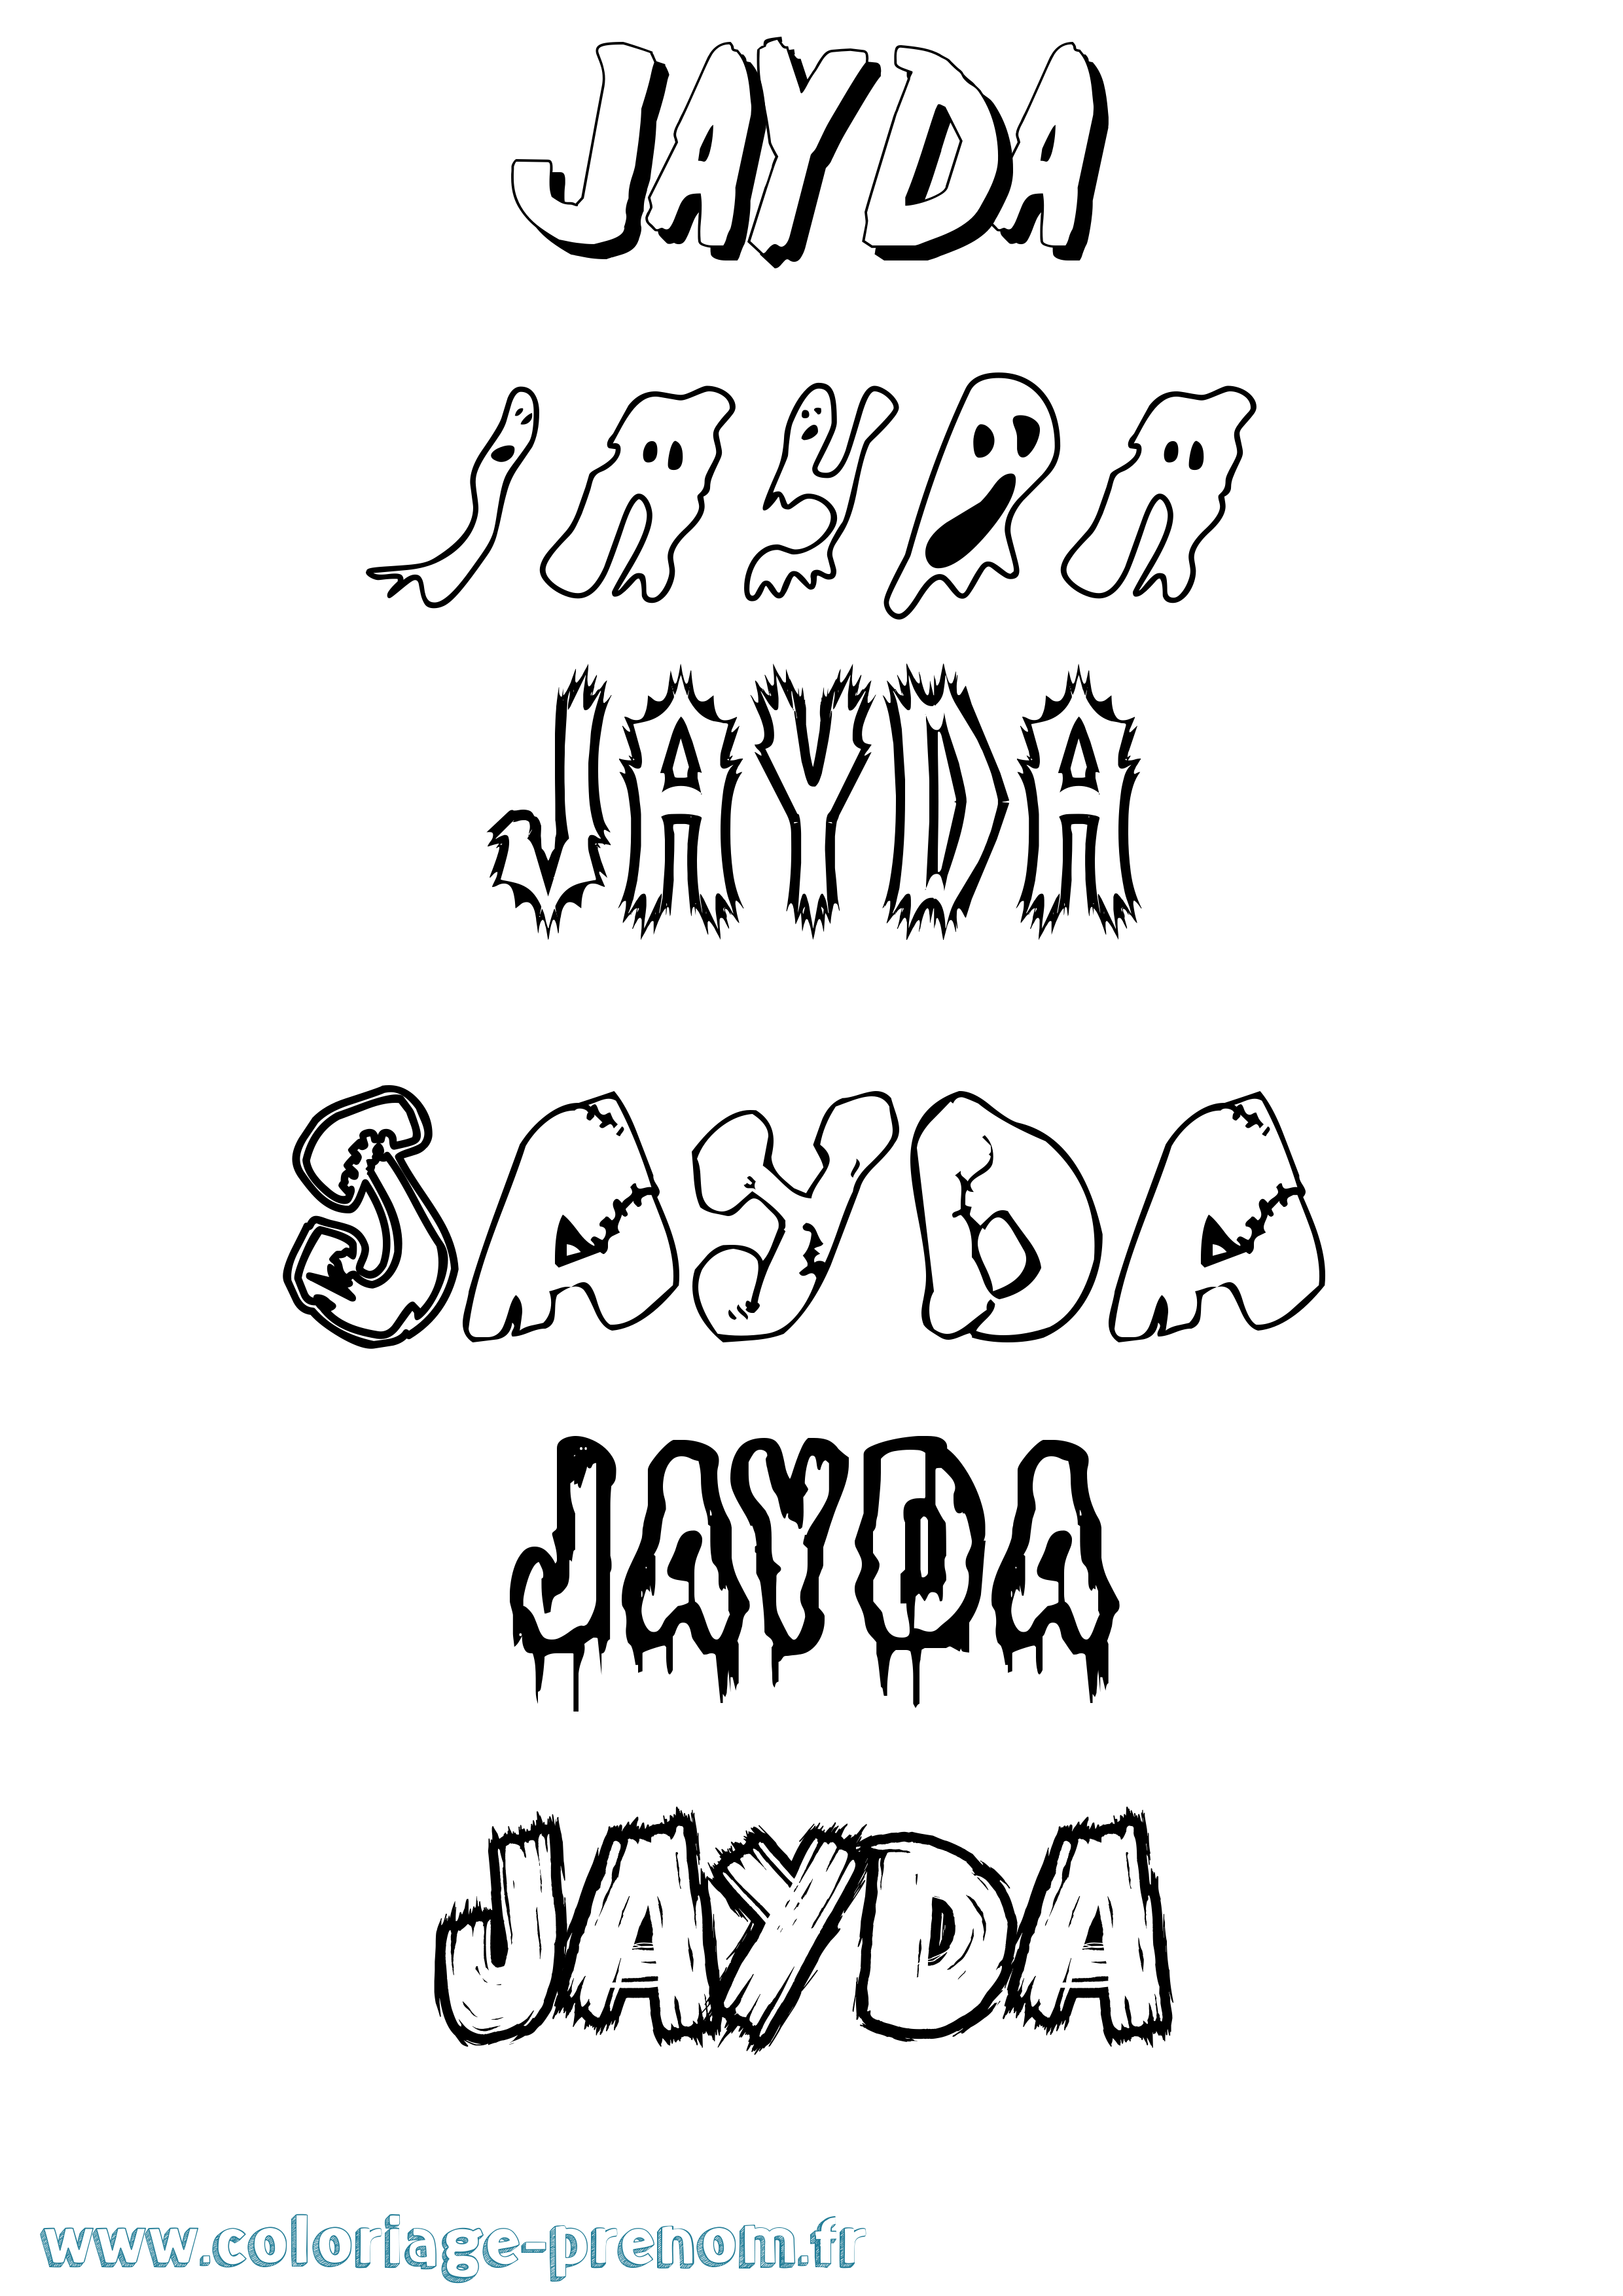 Coloriage prénom Jayda Frisson